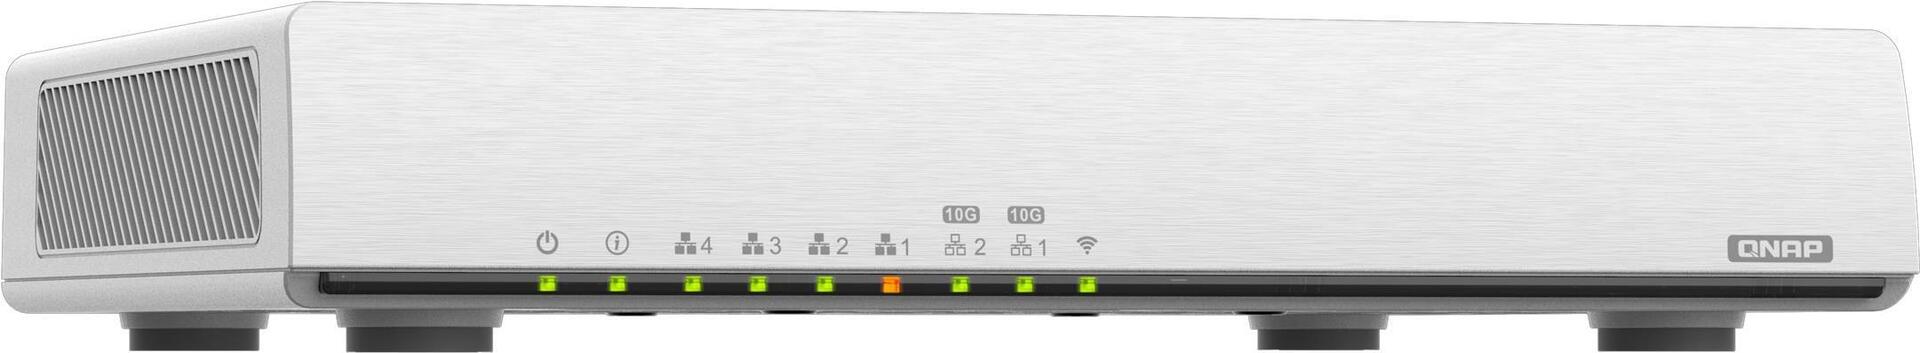 QNAP Qhora 301W: Dual 10G wifi 6 AX3600 Fanless SD-WAN router